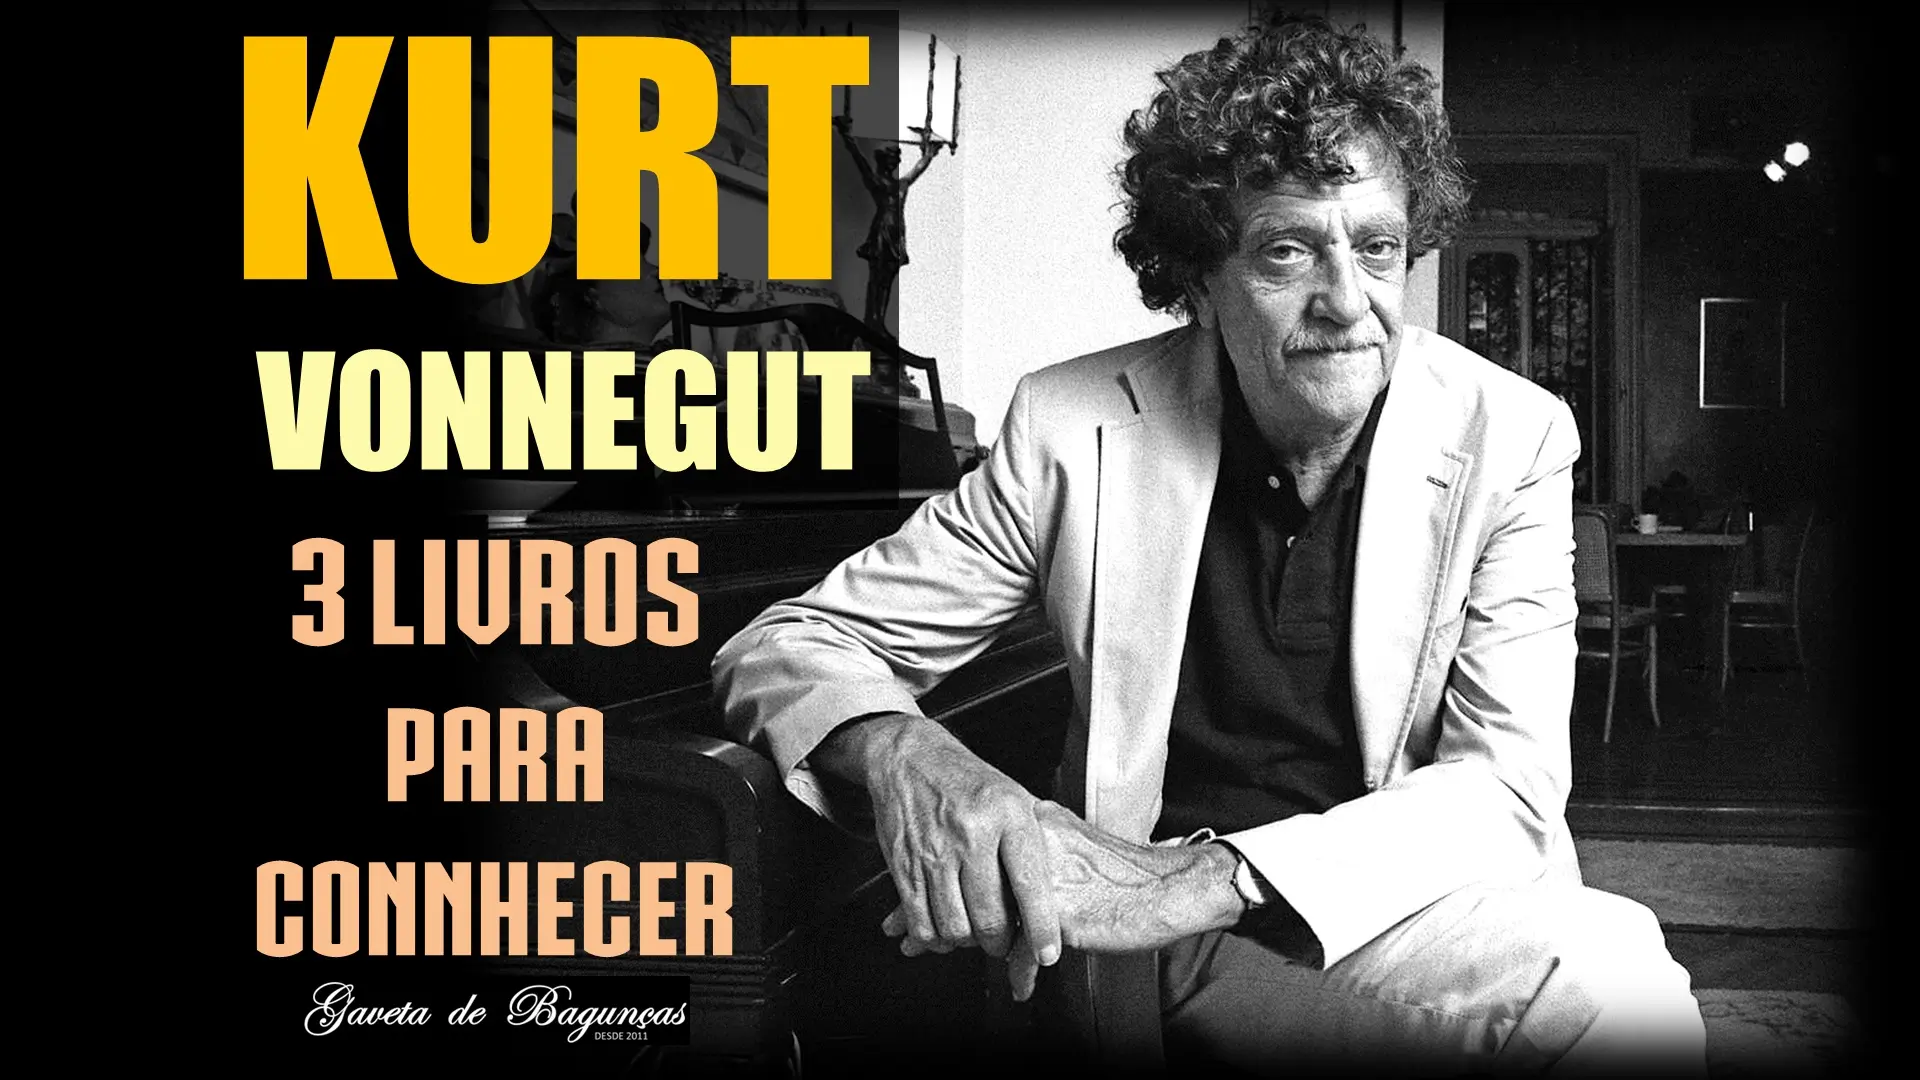 Descubra os 3 melhores livros de Kurt Vonnegut para ler além de "Matadouro 5", e conhecer sua literatura ácida e perspicaz. Esta lista tem livros para velhos e novos fãs!